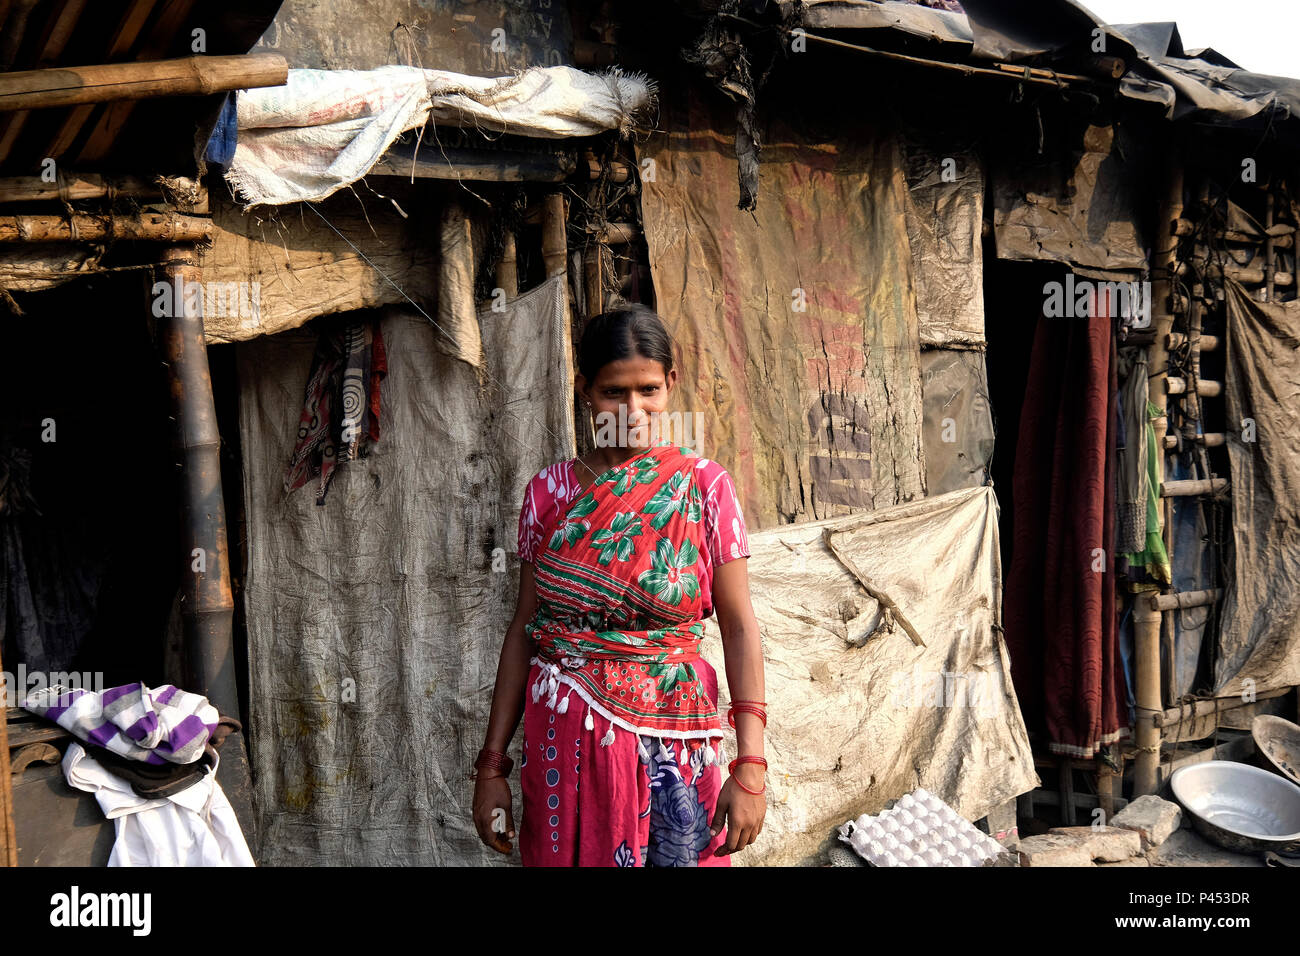 India, Kolkata, Park Circus slum Stock Photo